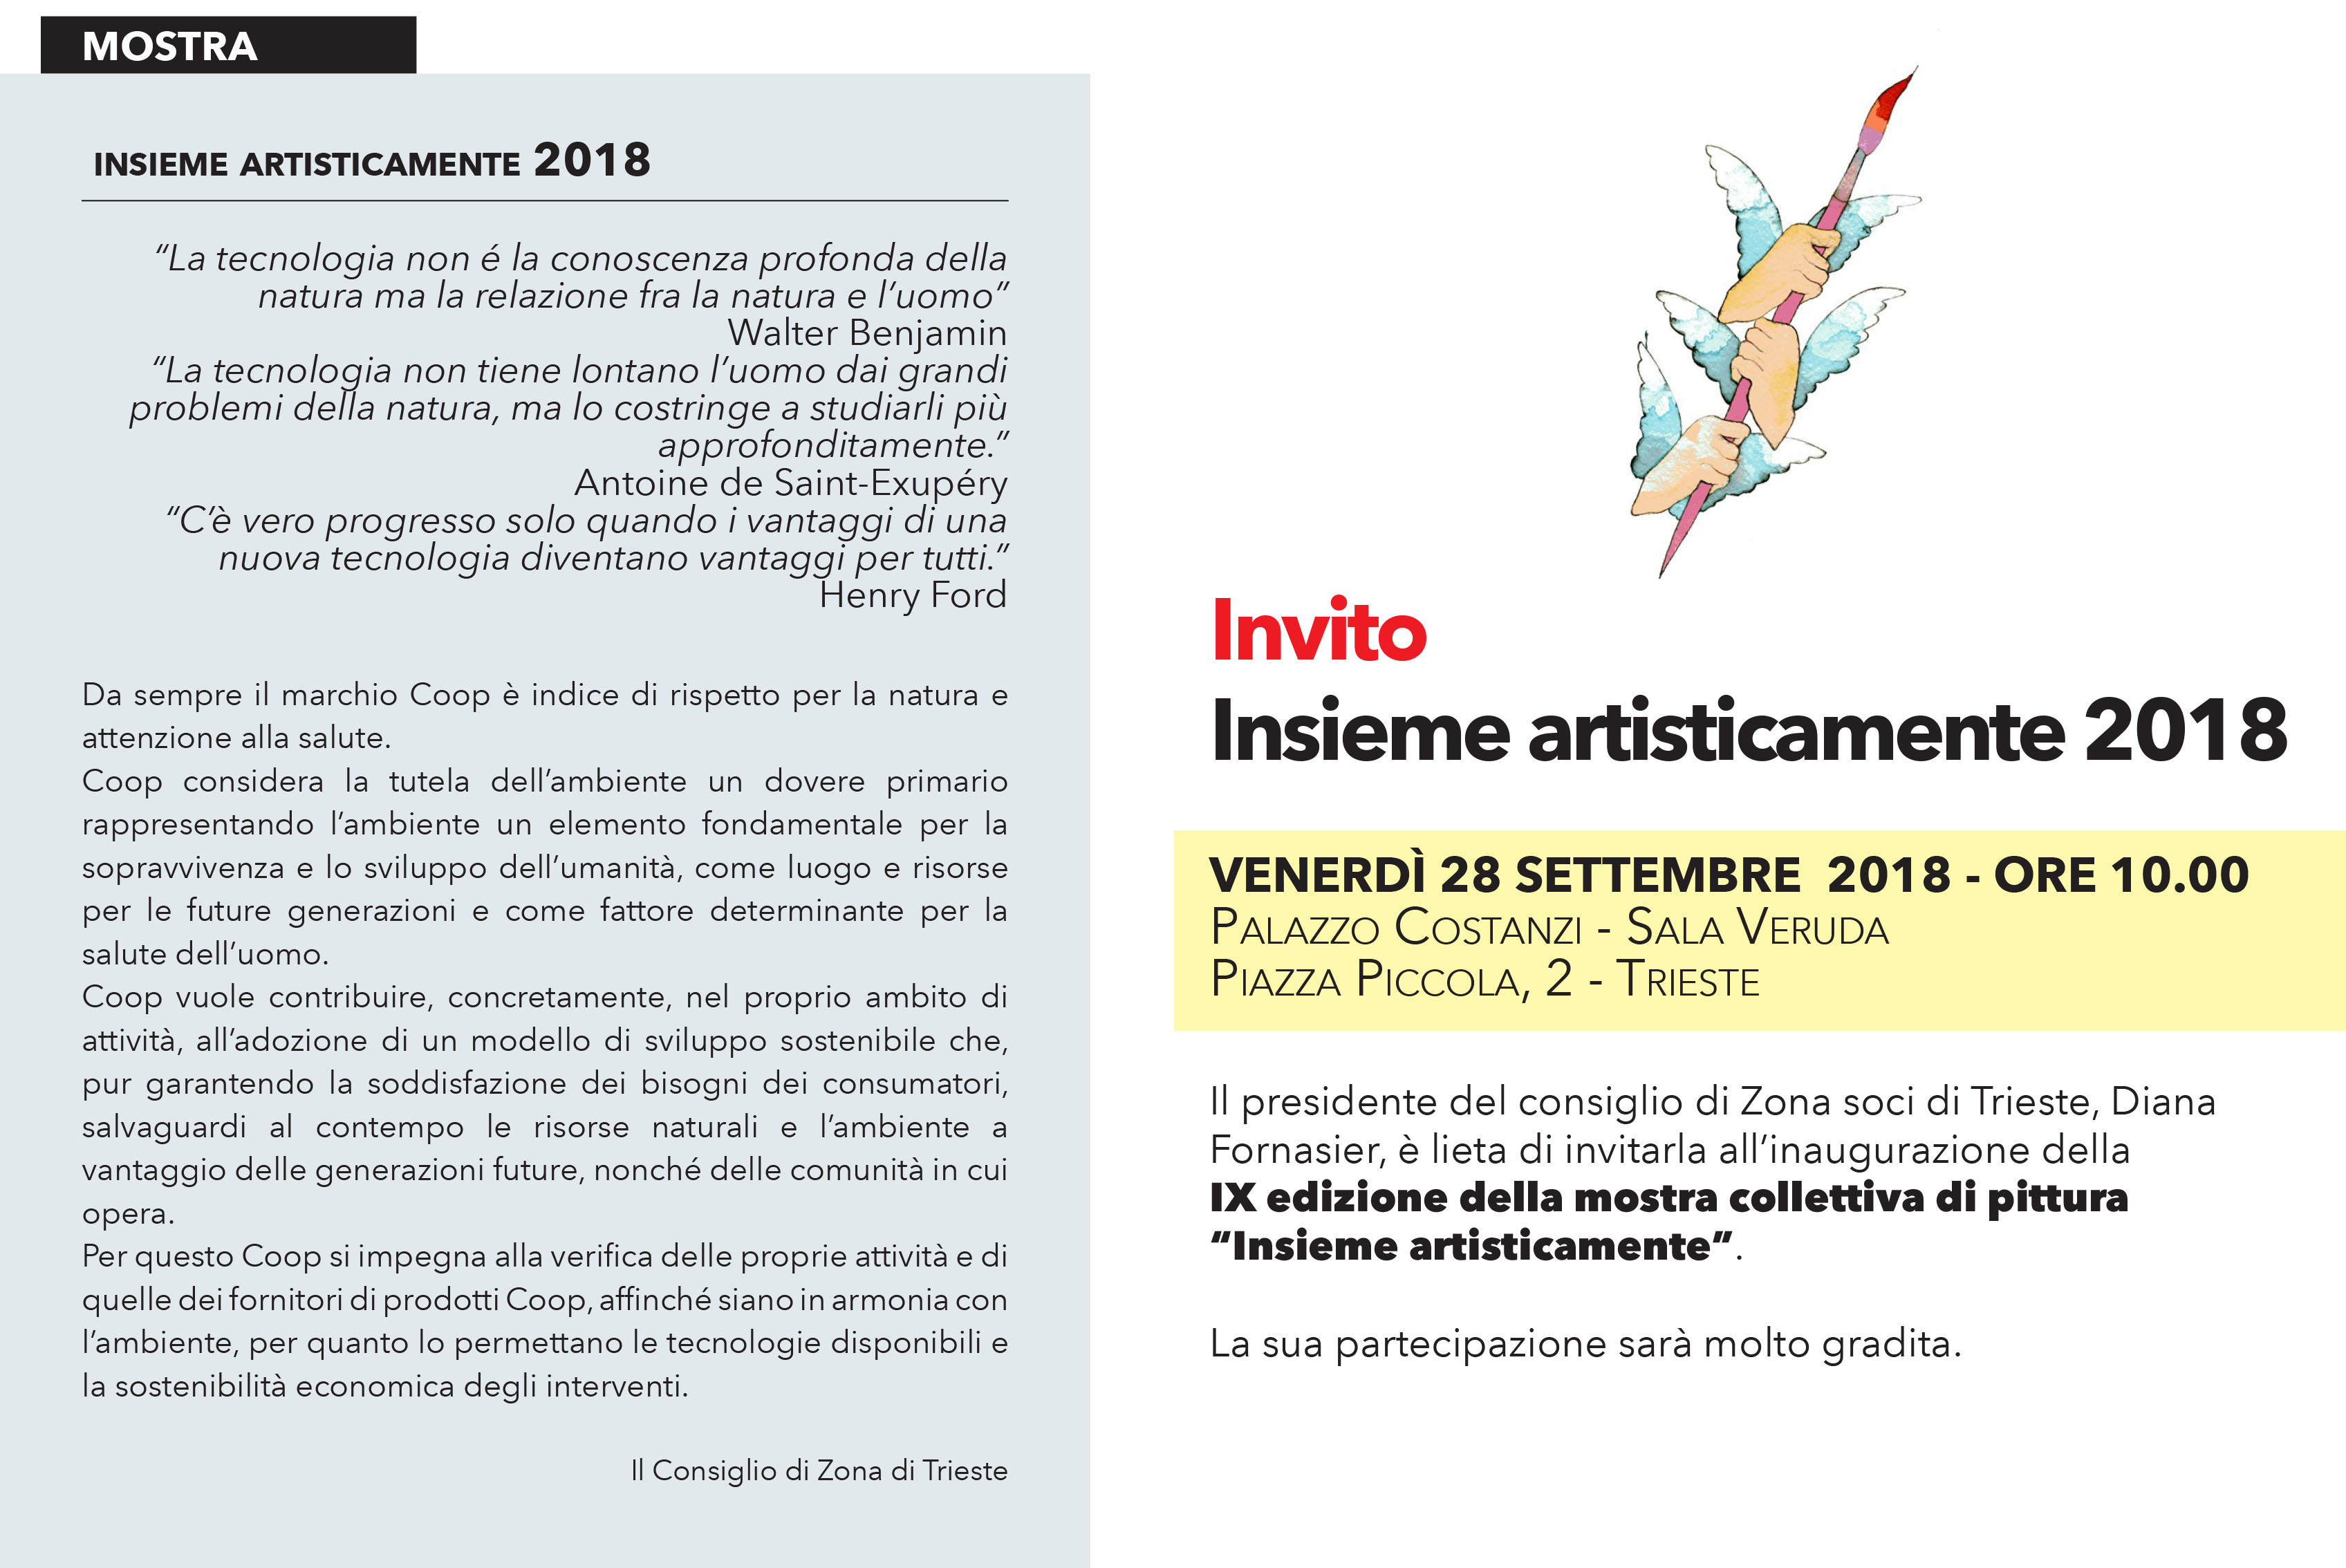 TRIESTE 2018 Invito Insieme Artisticamente - Copia-1